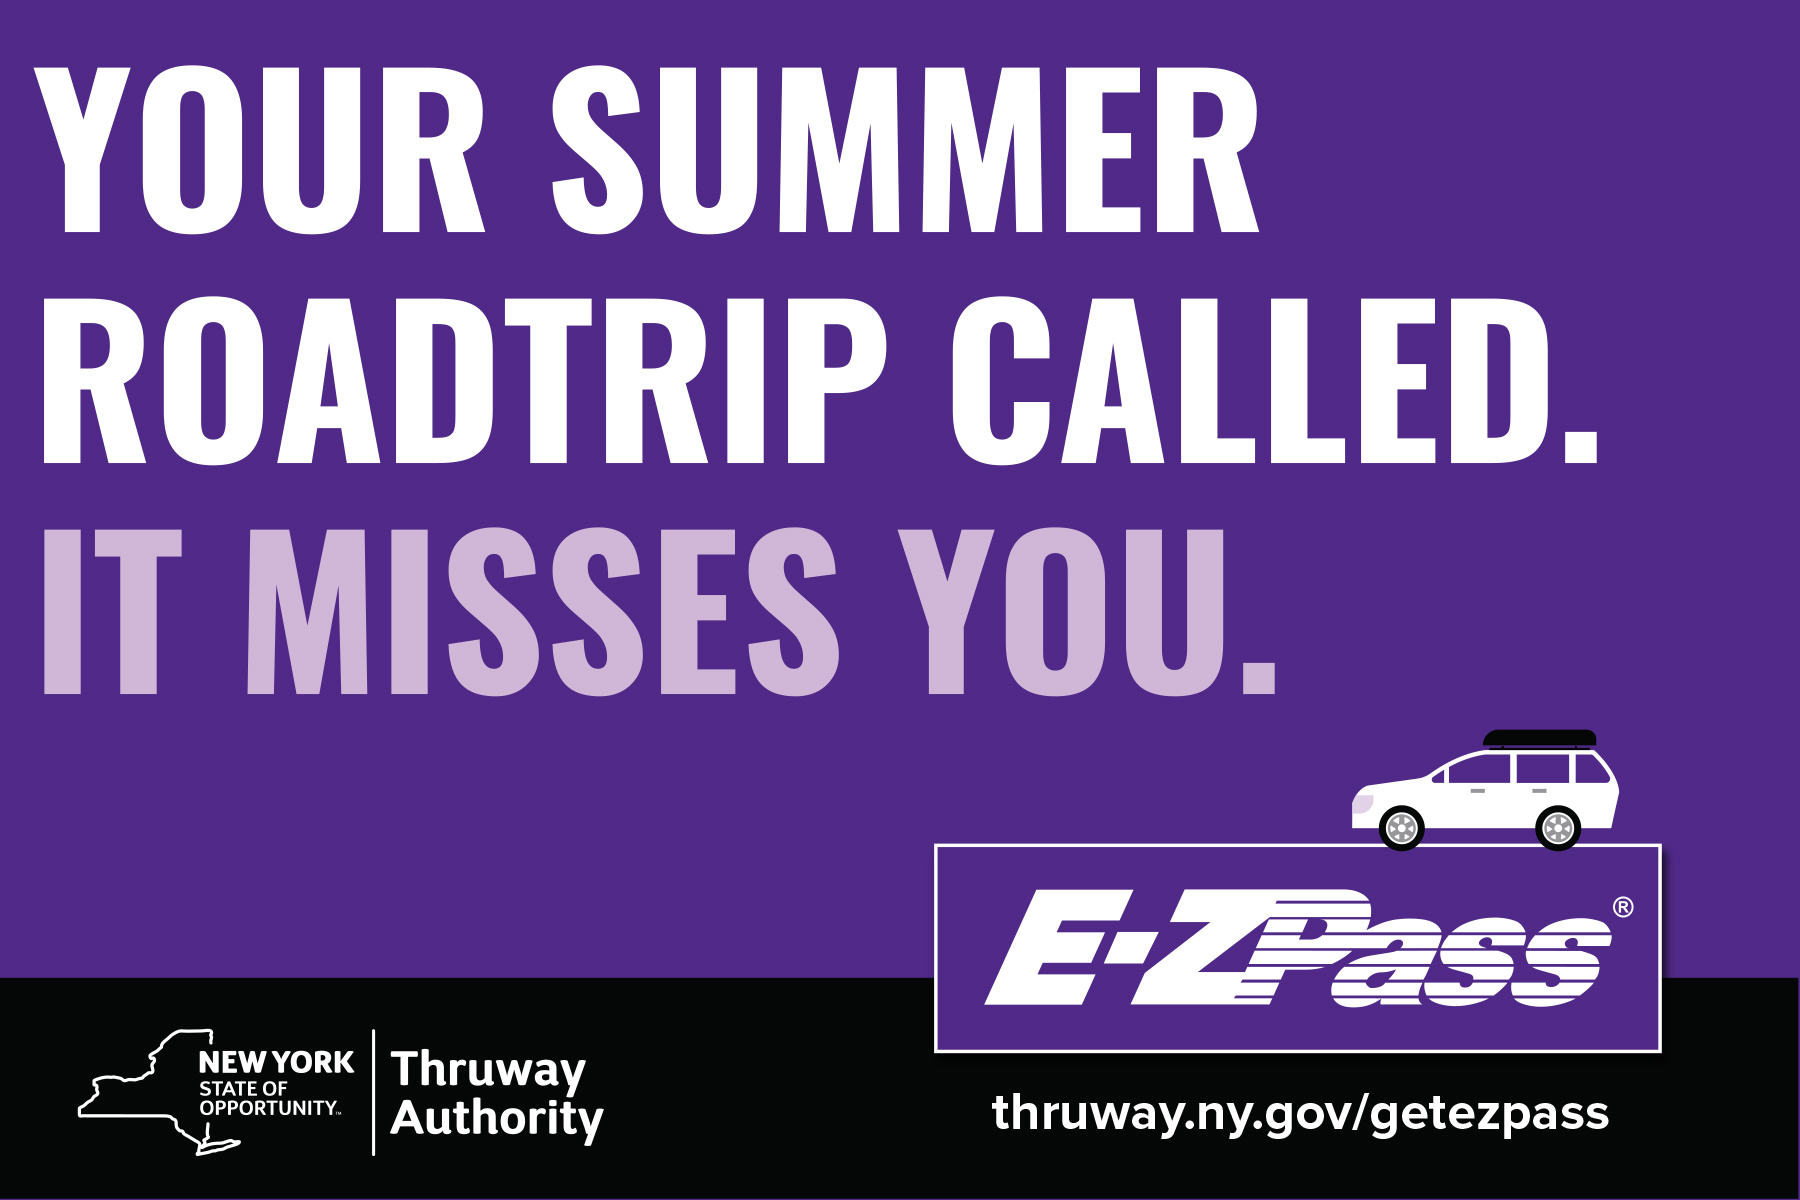 ezpass postcard ad your summer roadtrip called